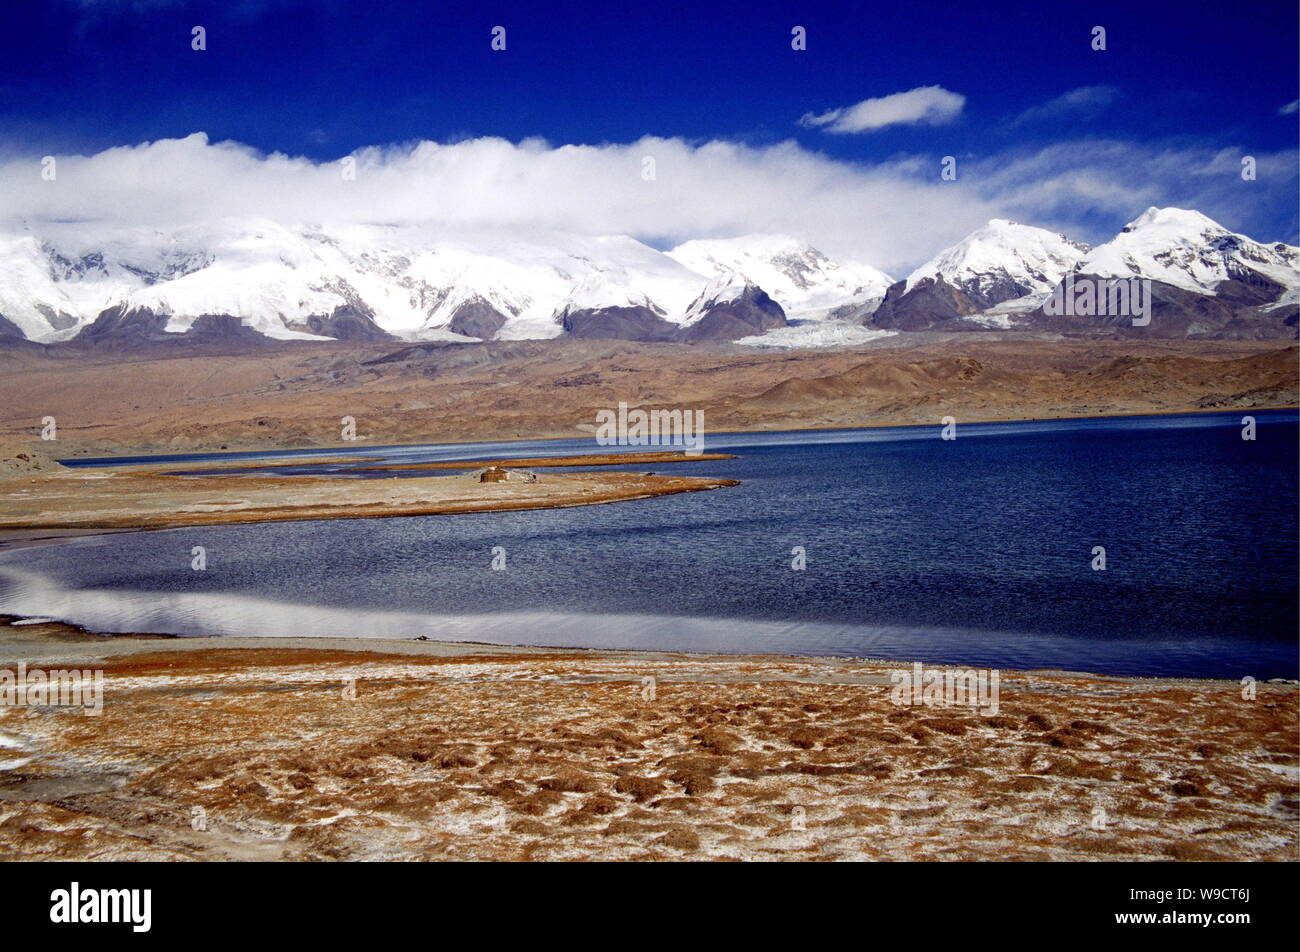 Landschaft der Hochebene und die hohen Berge in Tashkurgan tadschikische Autonome County im Nordwesten von China Autonome Region Xinjiang Uygur, Oktober 2007. Stockfoto